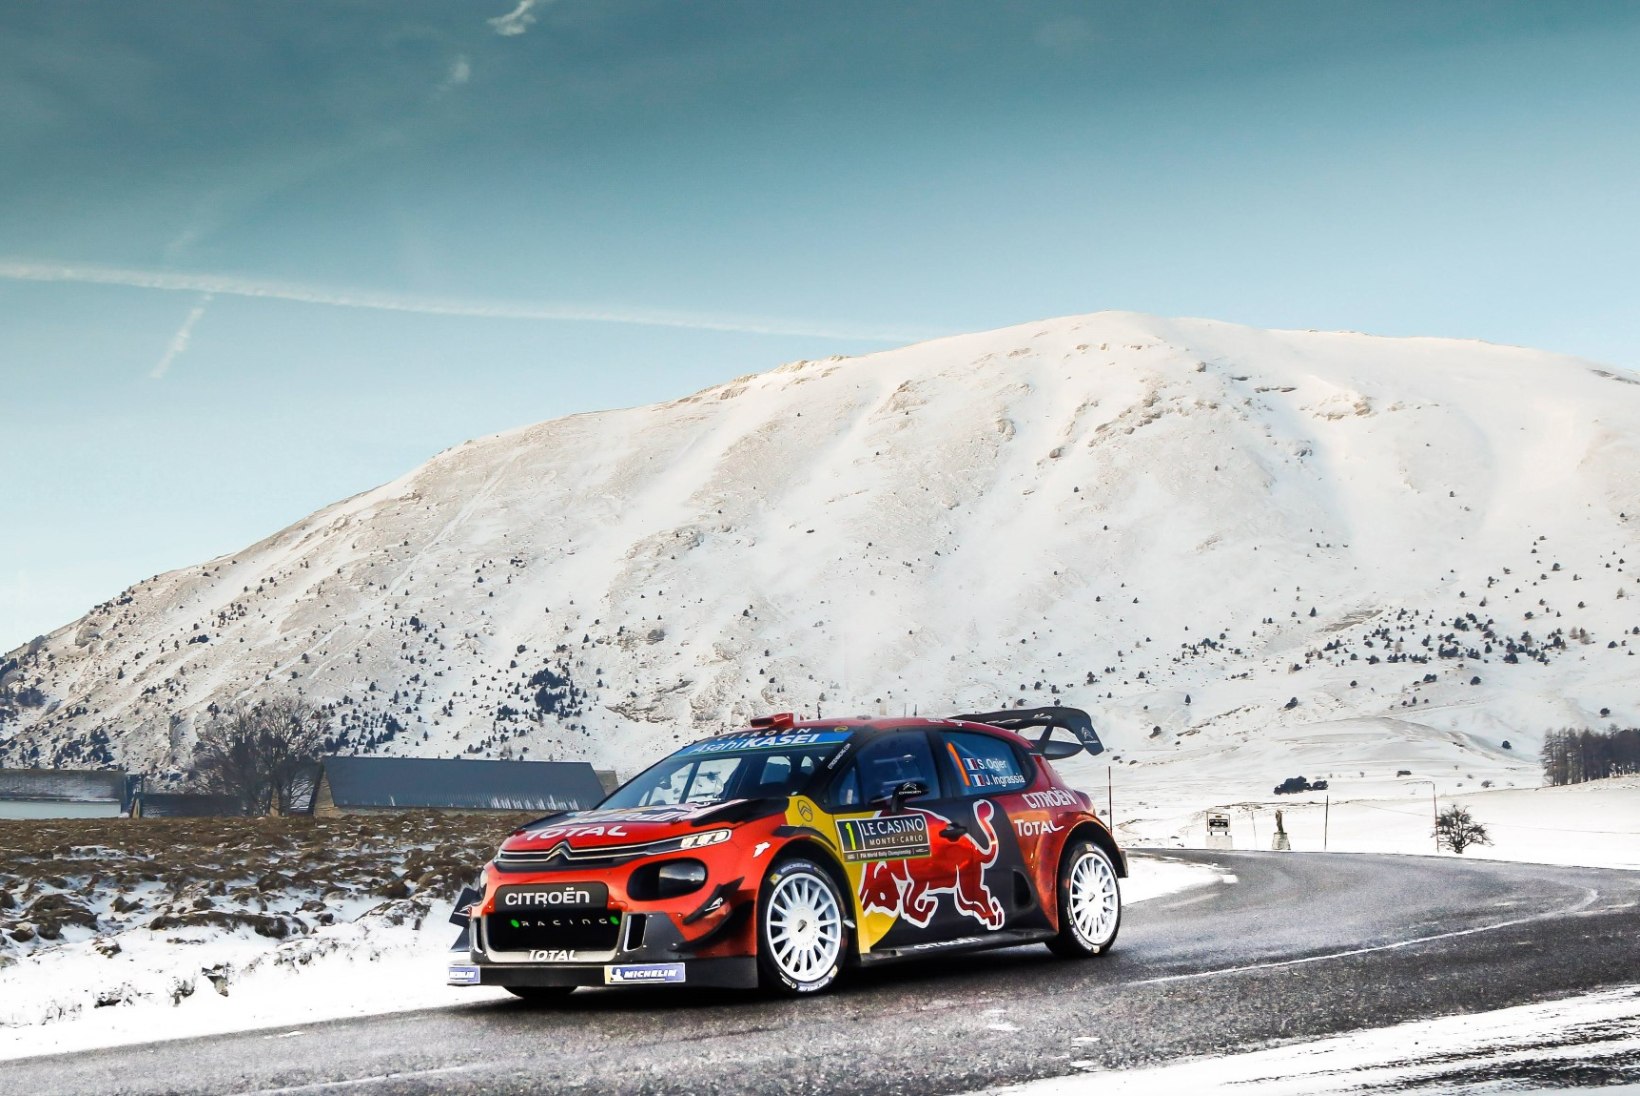 Majanduslikud huvid sunnivad WRC-sarja Euroopast eemale